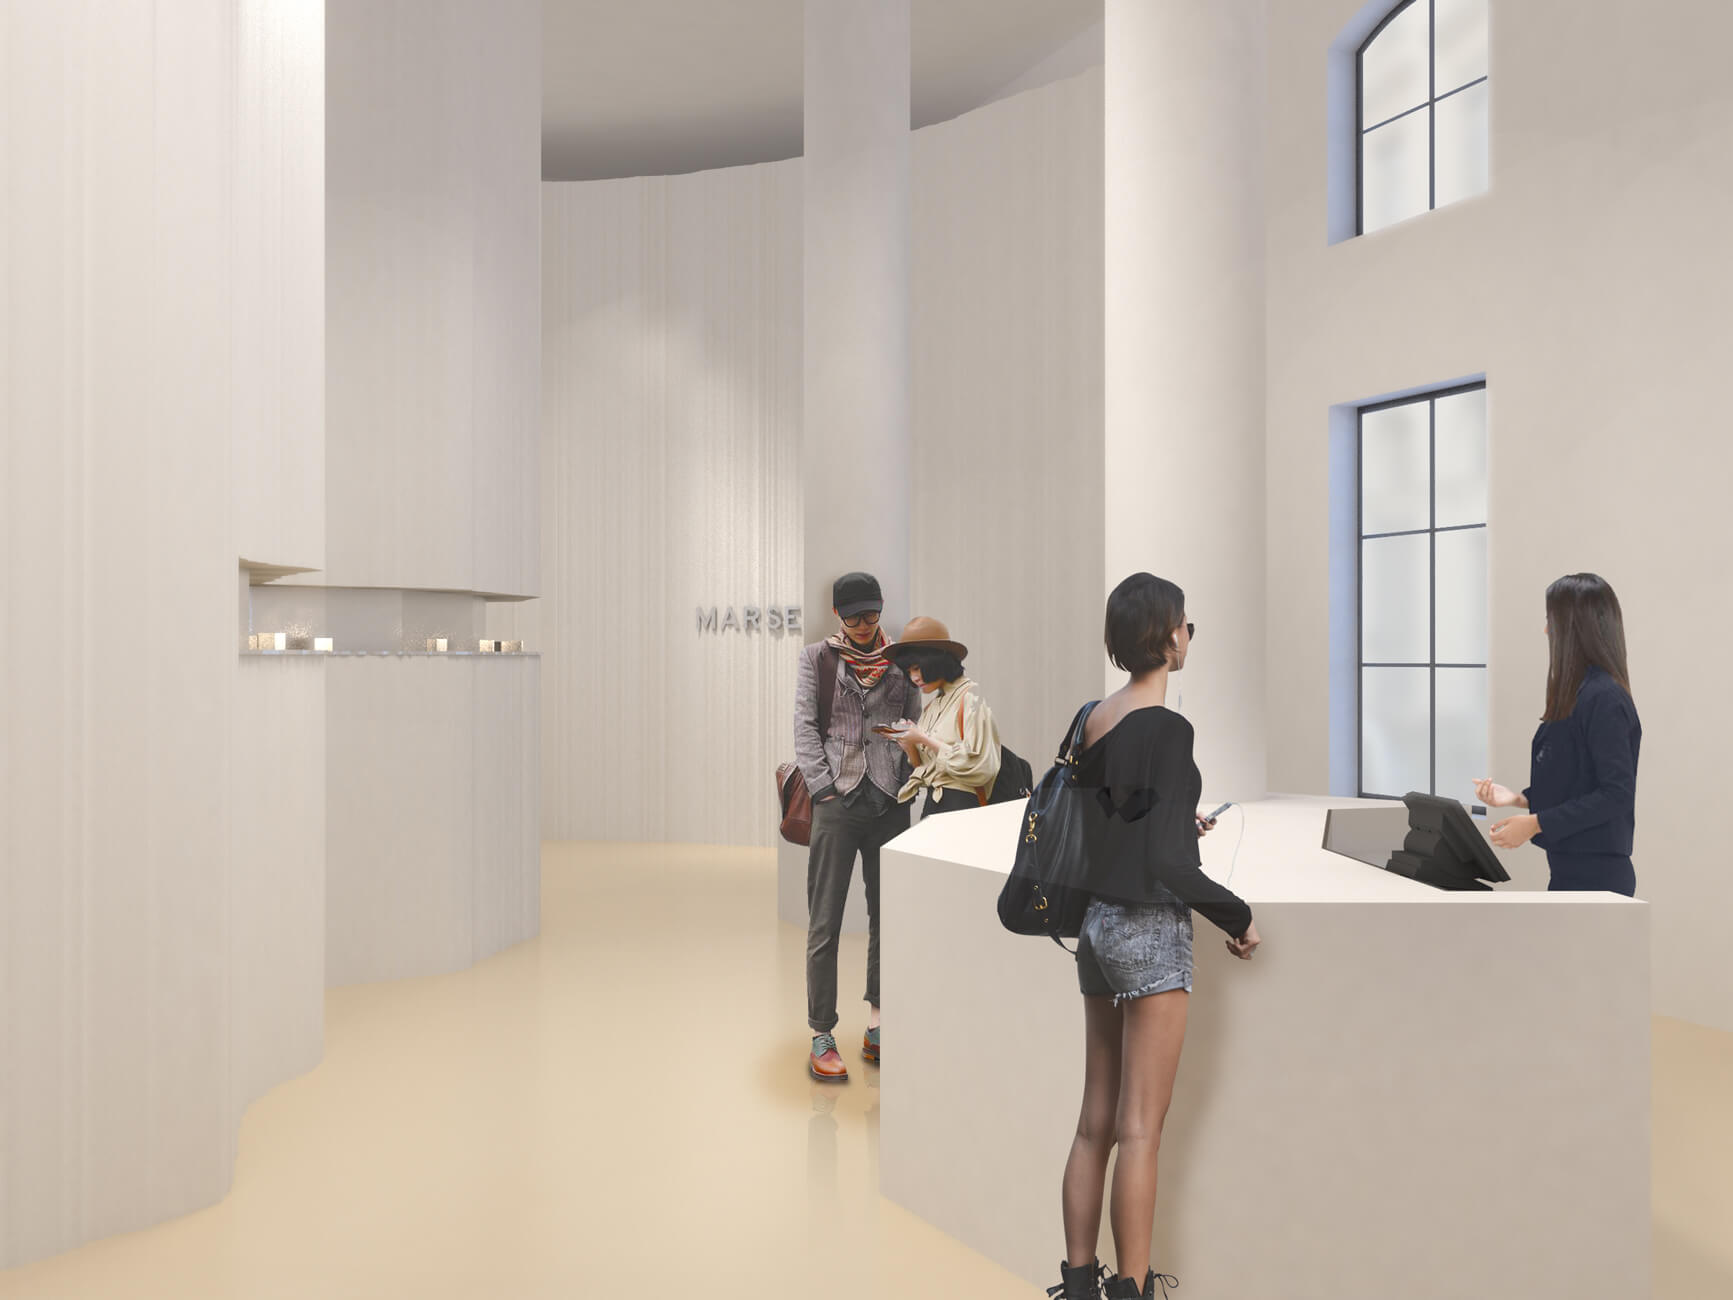 Vue d'ensemble en 3D photoréaliste du flagship store Marseille